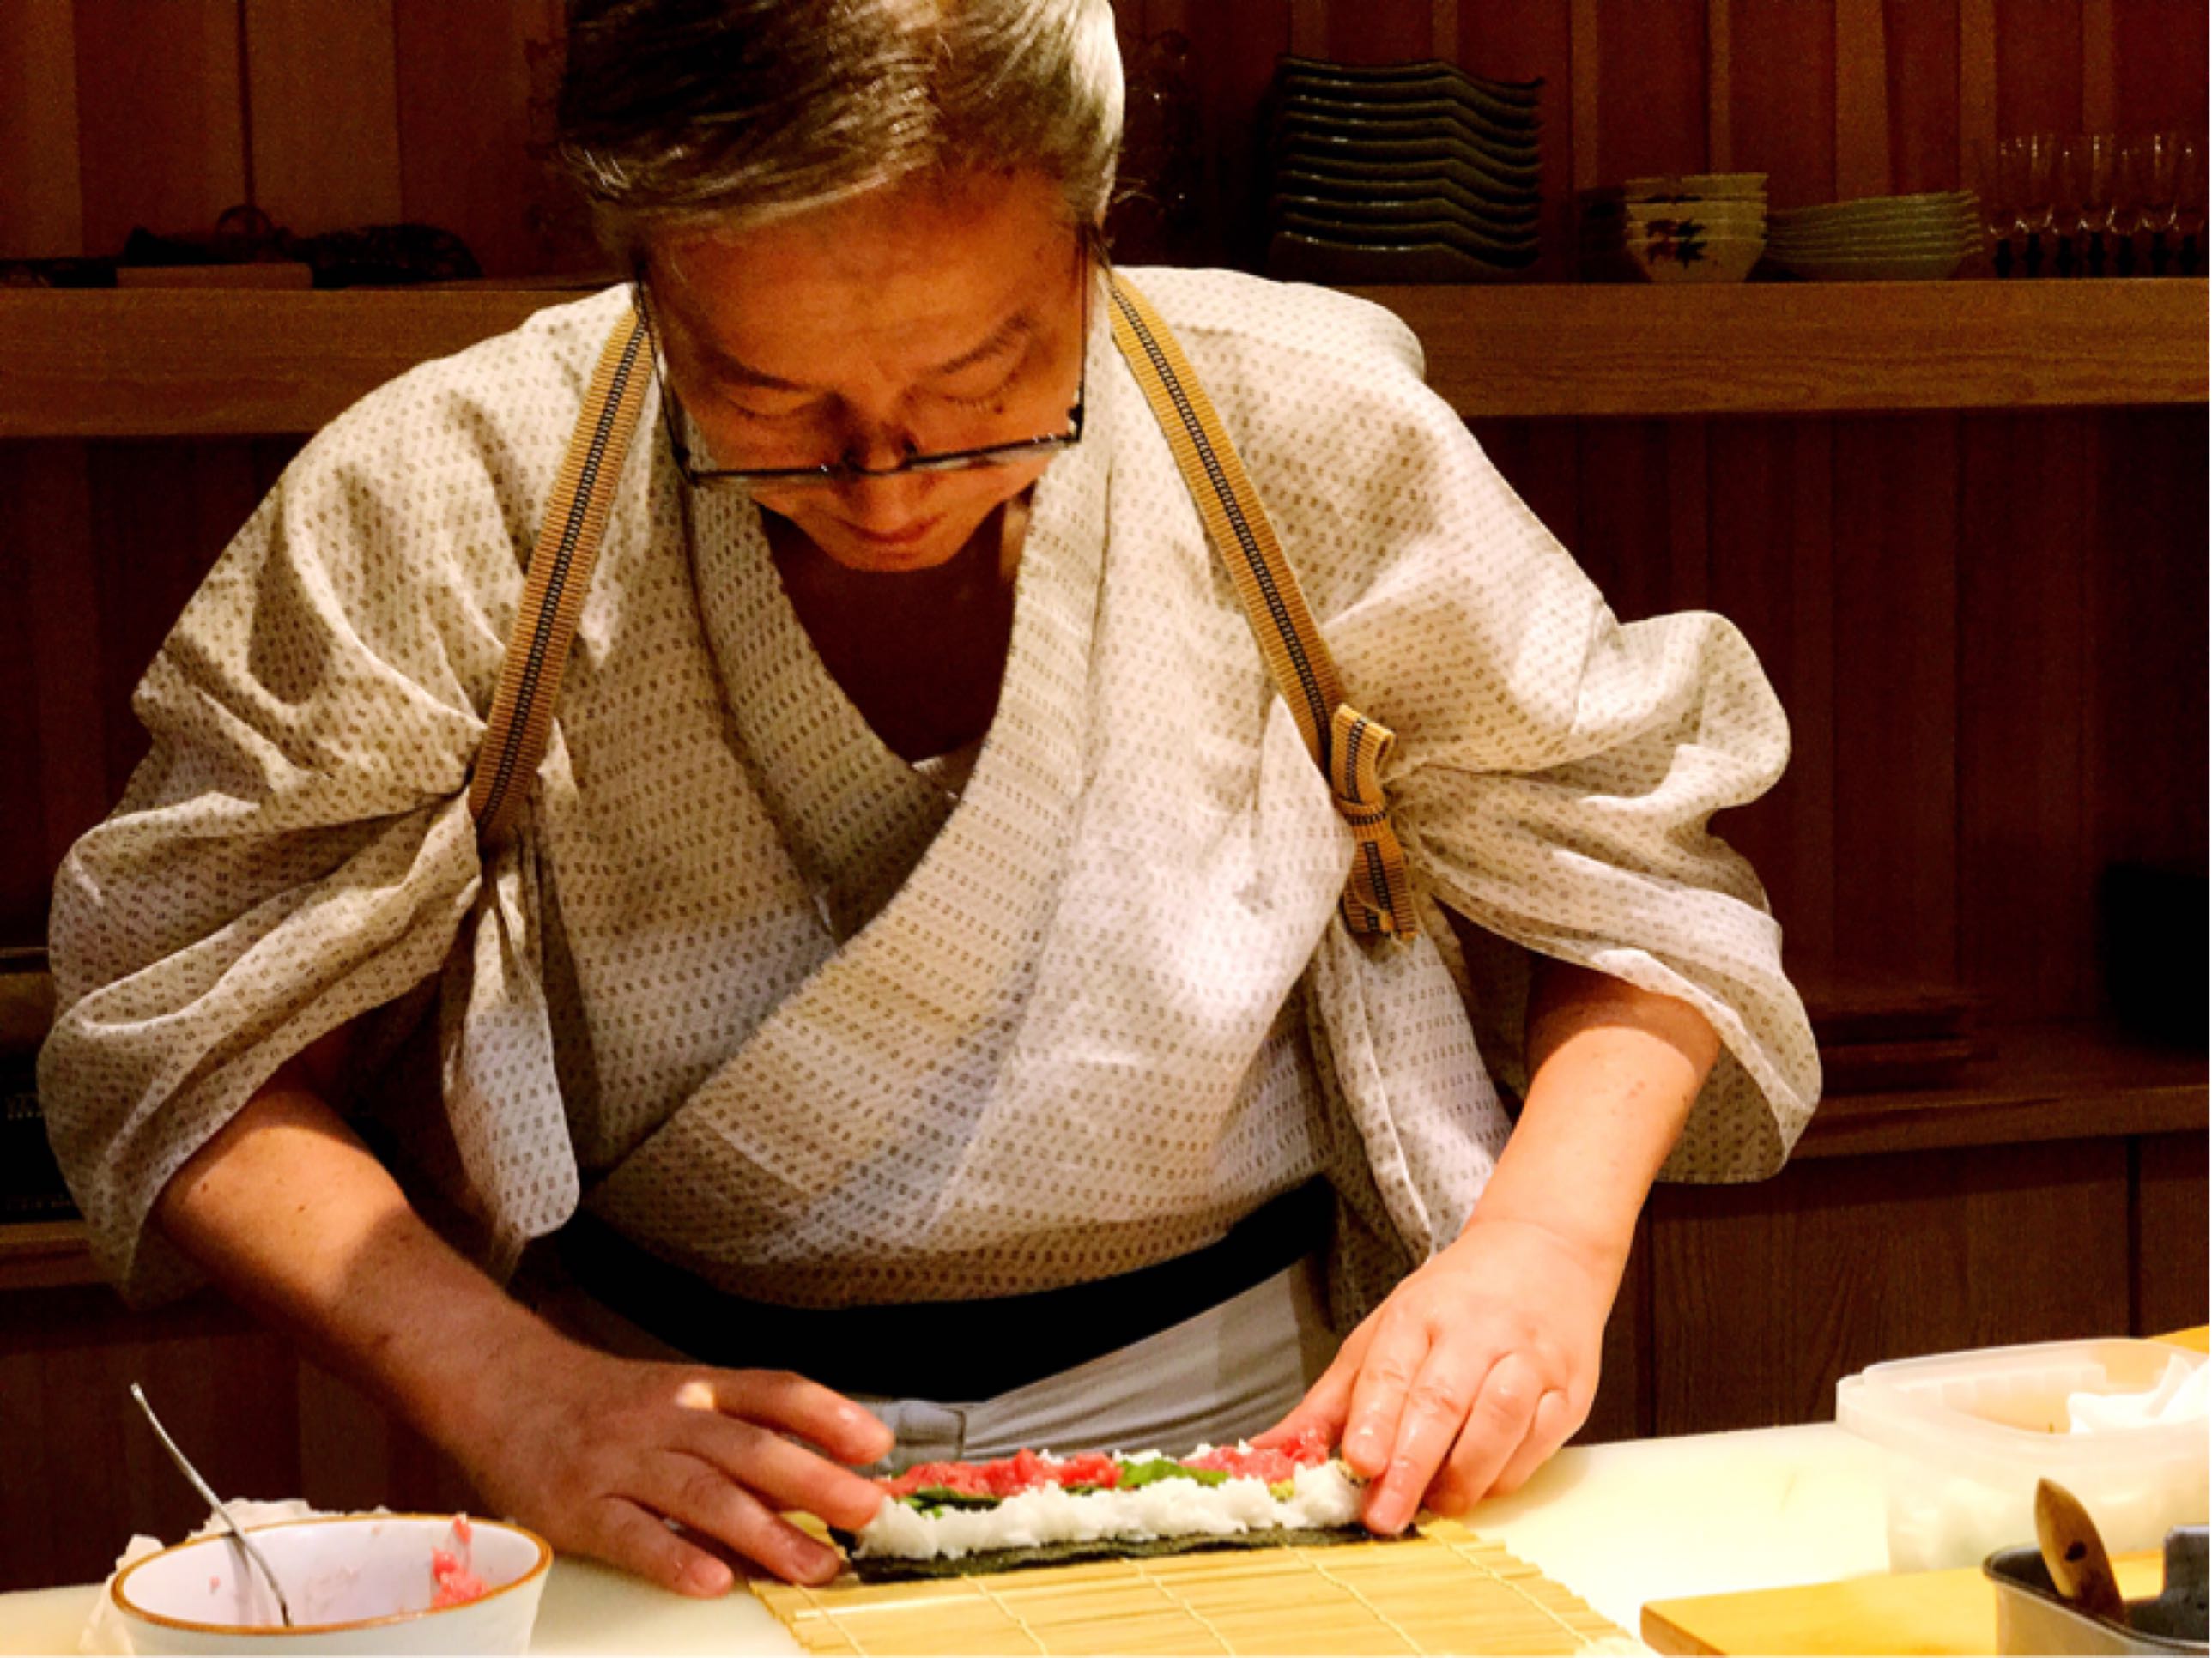 首页【组图】龙寿司的大关师傅 我一位做日本料理的朋友说,这两个人